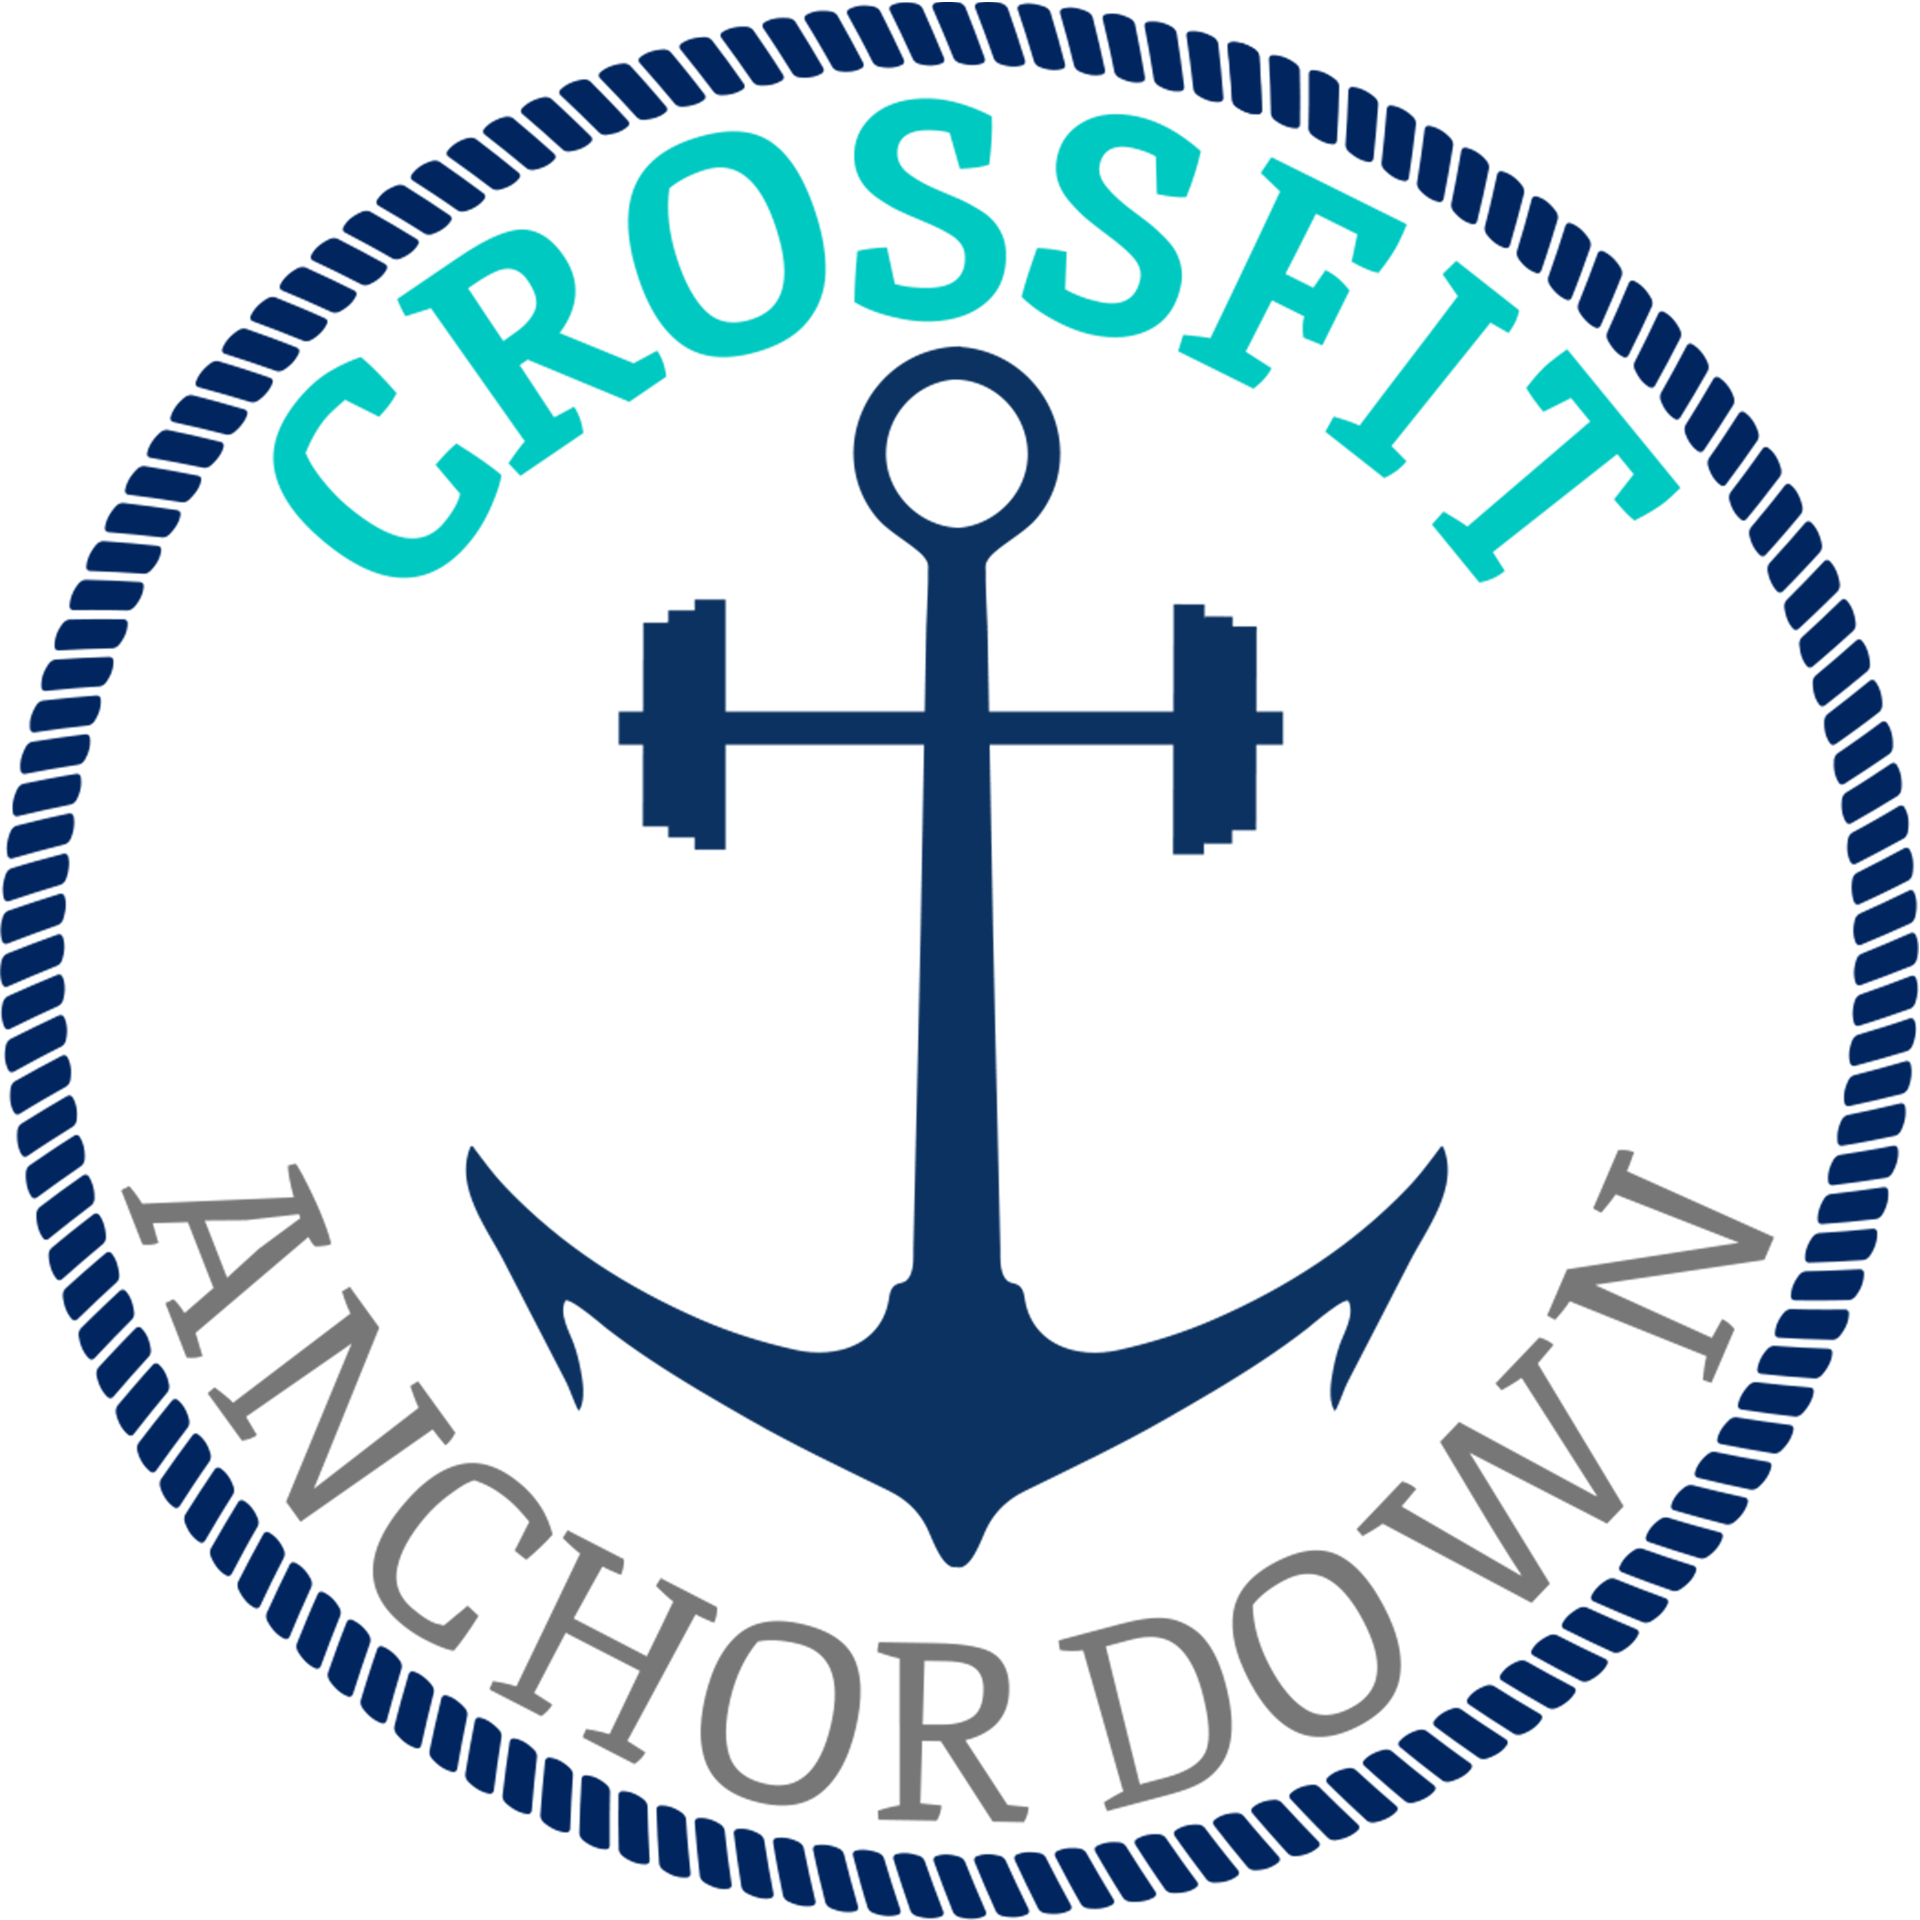 Anchor Down Logo - CrossFit Anchor Down